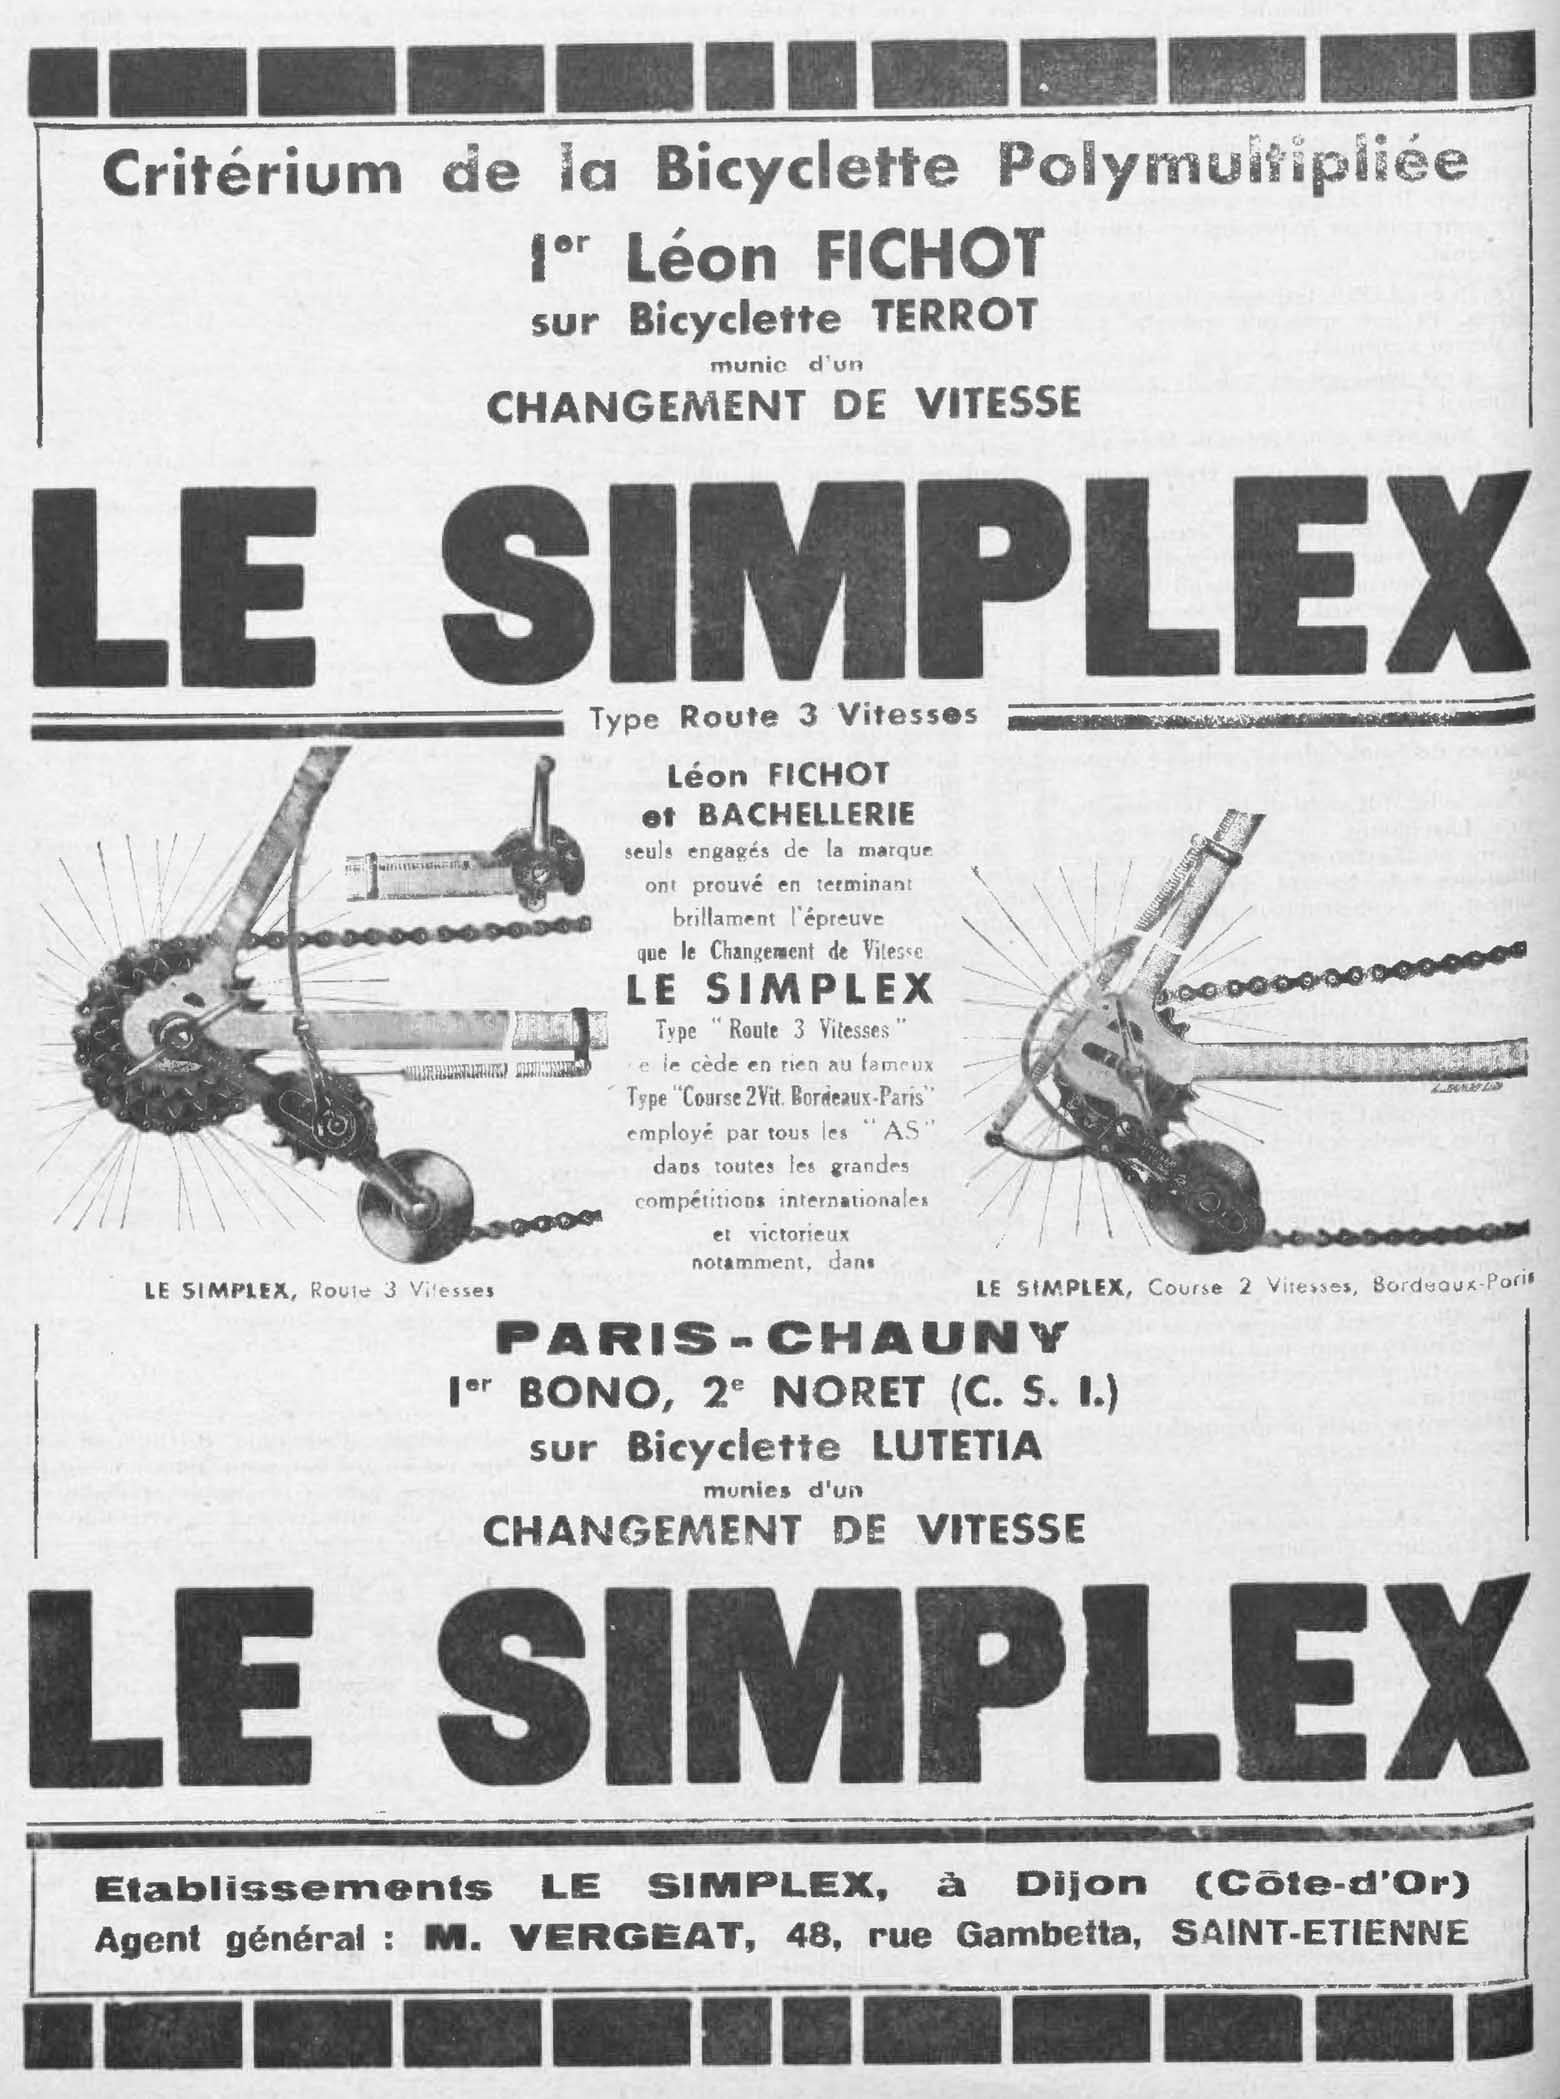 L'Industrie des Cycles et Automobiles March 1932 - Simplex advert main image